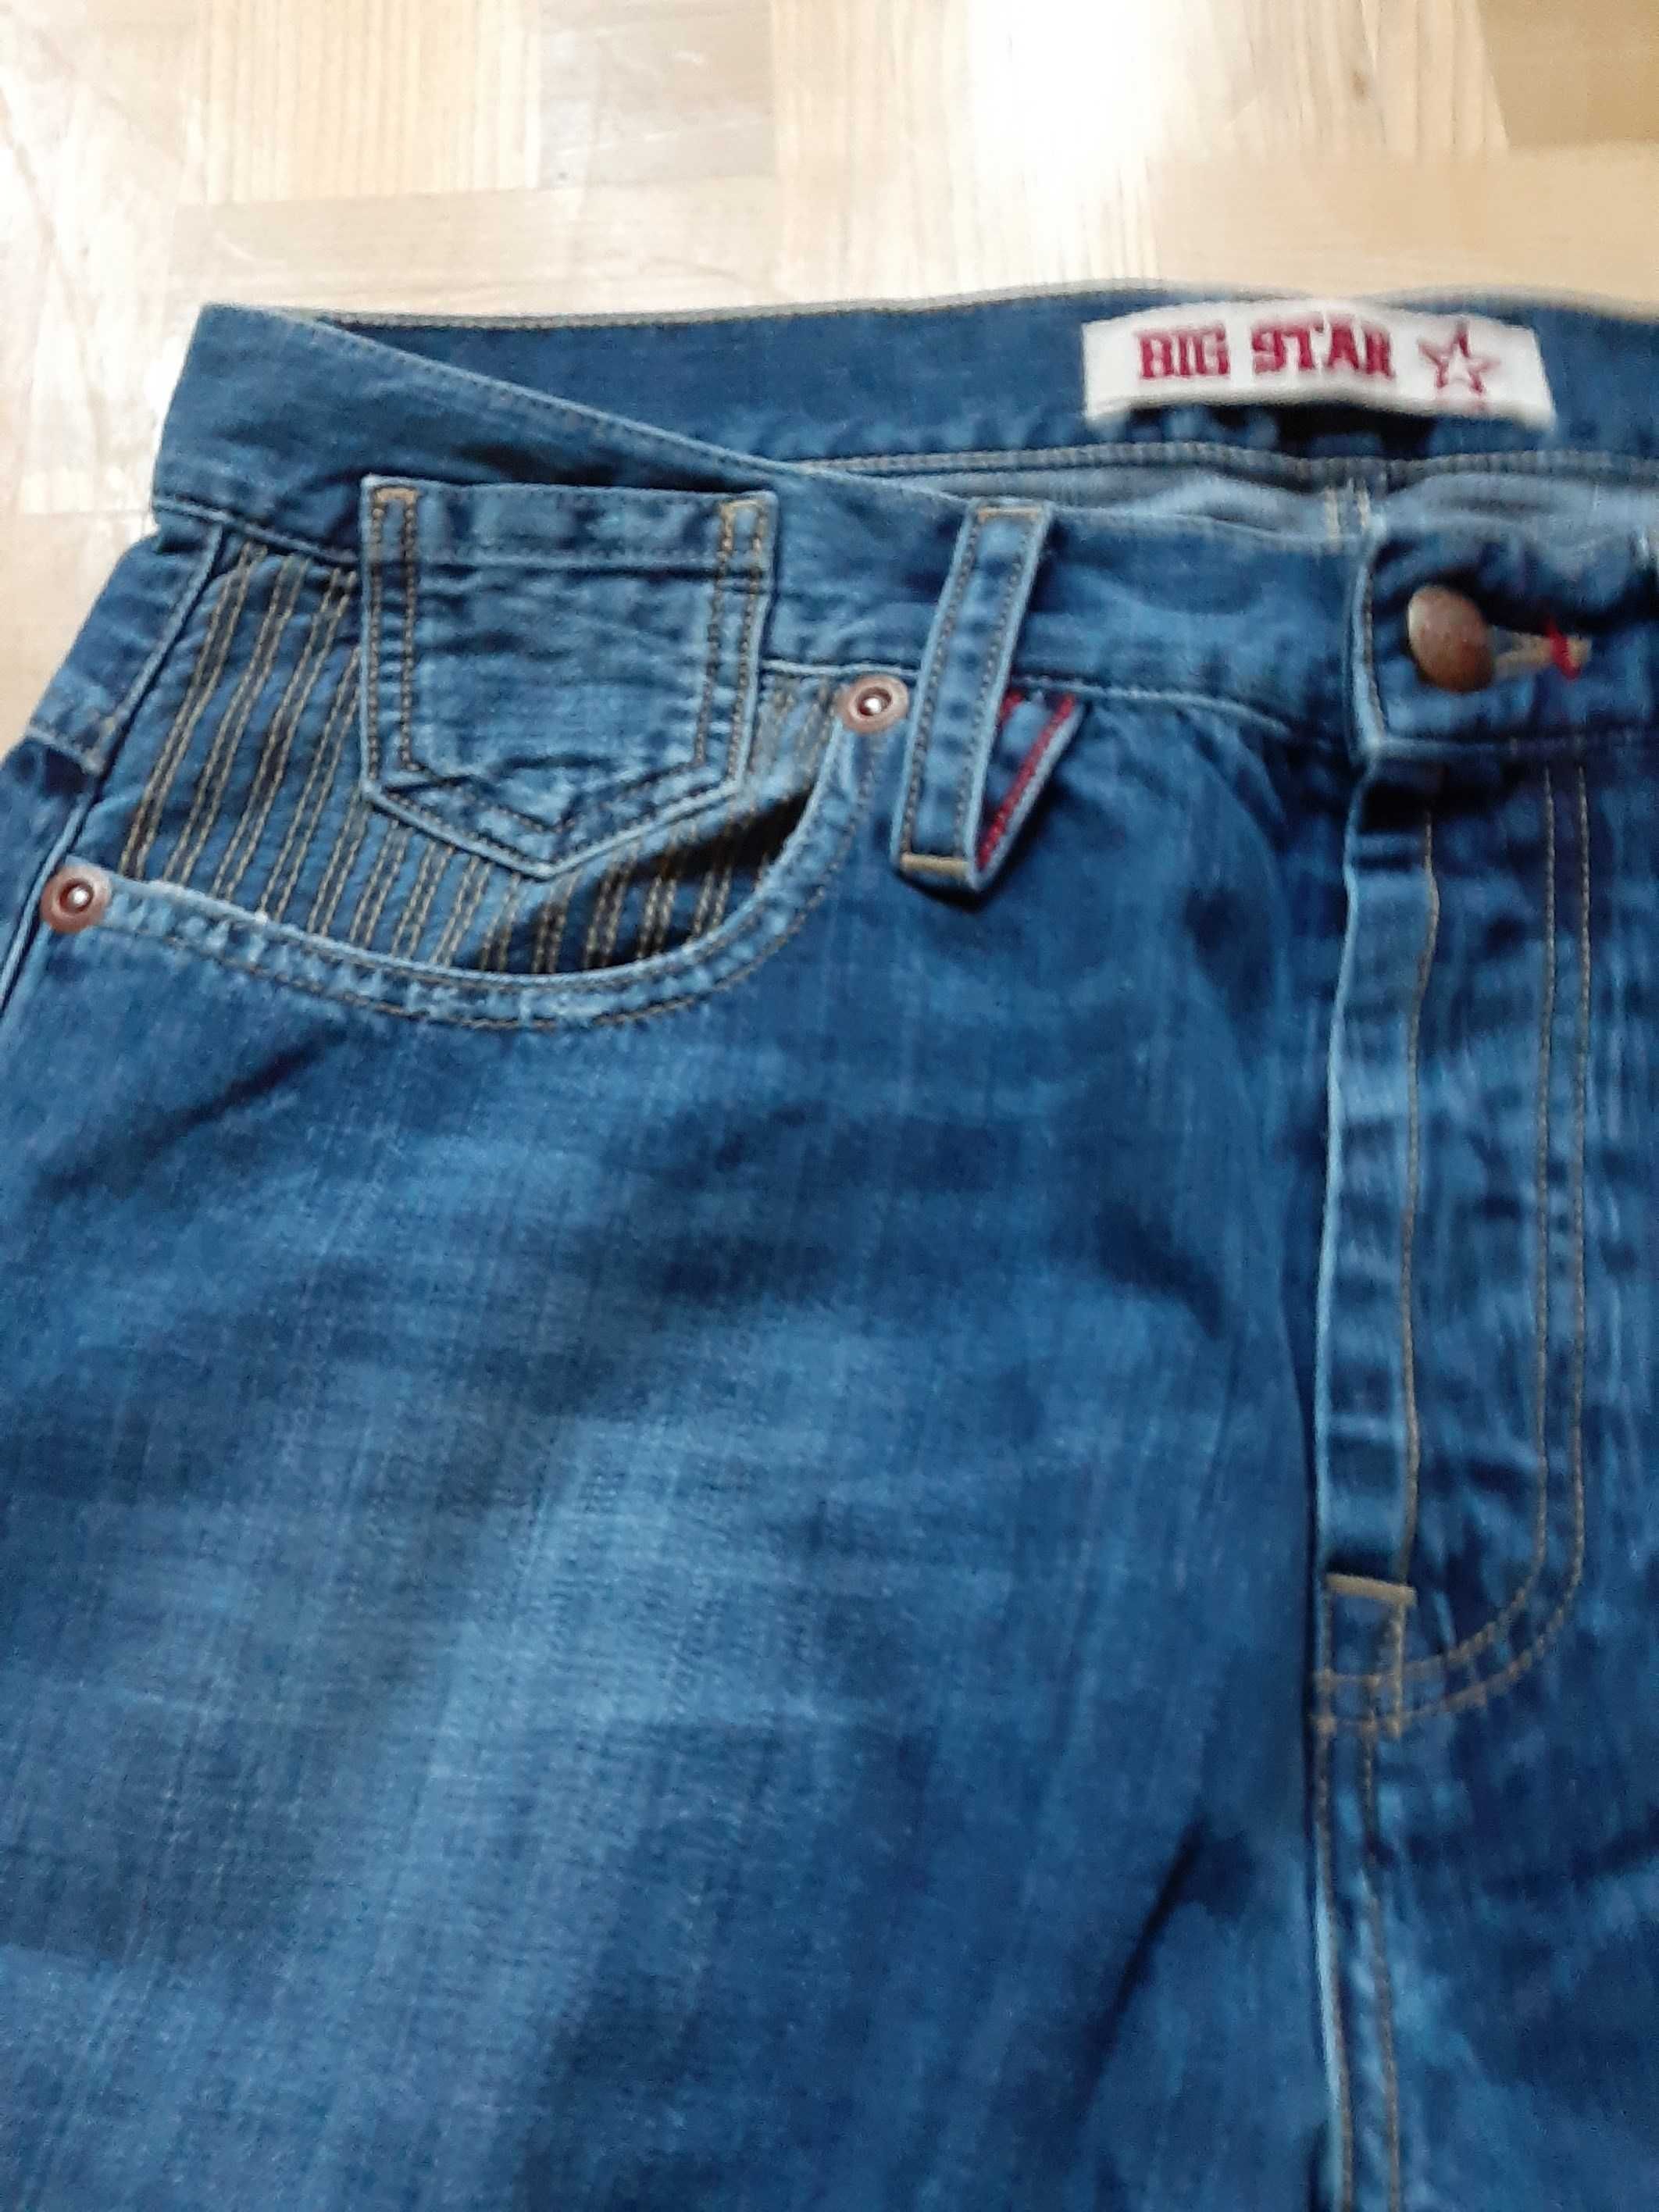 Spodnie męskie jeans Big Star Alan 219, nowe